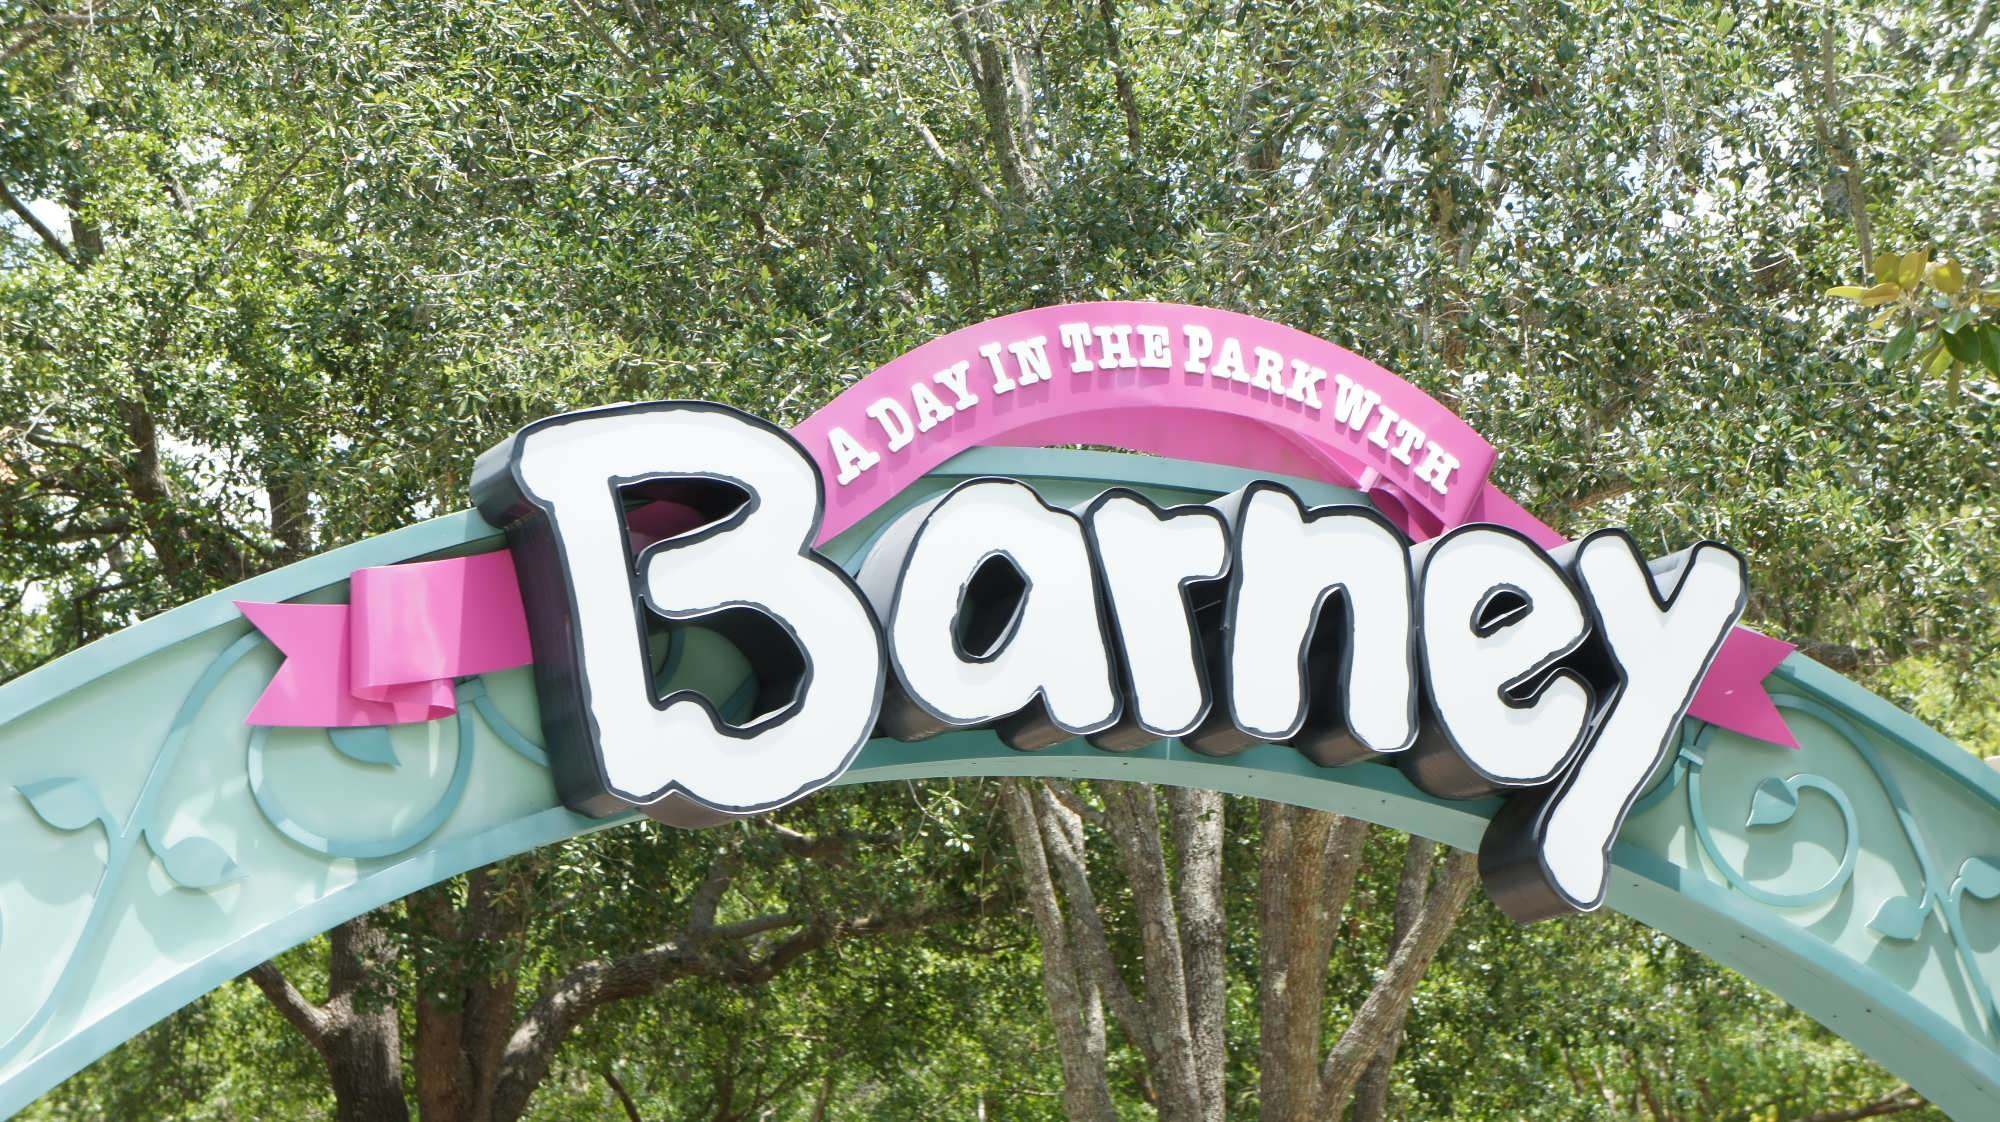 Un día en el parque con Barney ahora cerrado en Universal Orlando